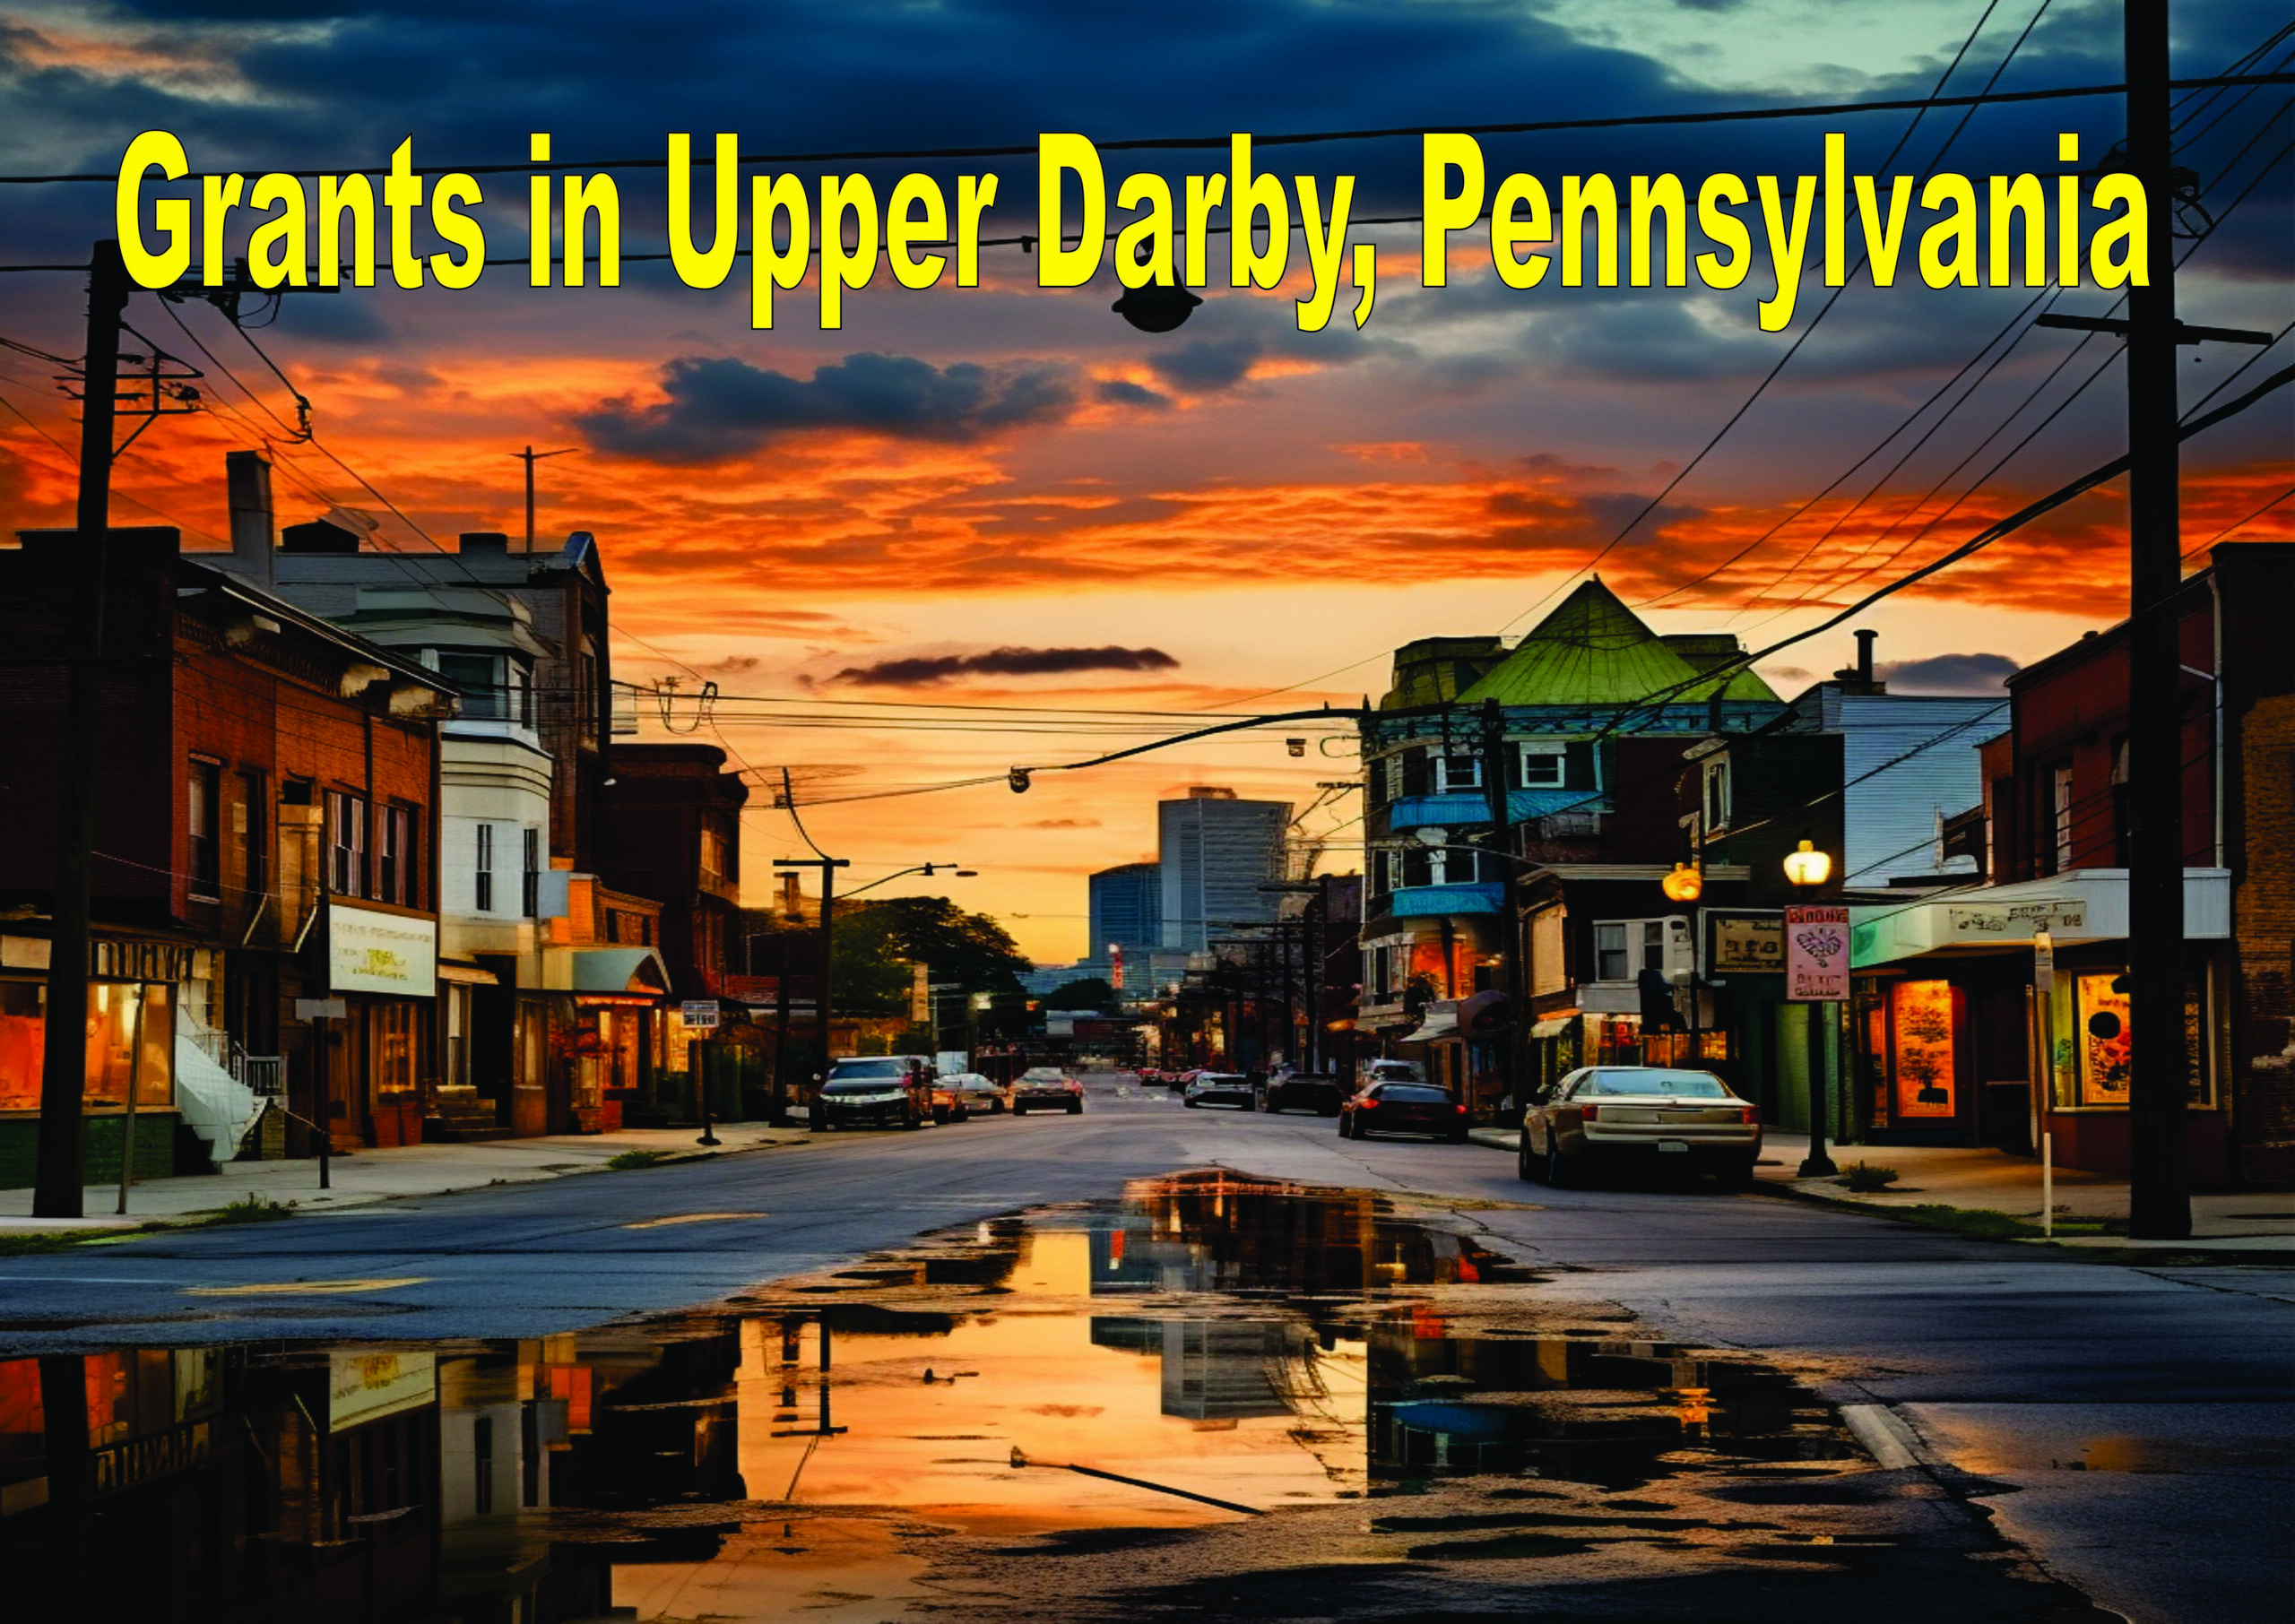 Upper Darby, Pennsylvania